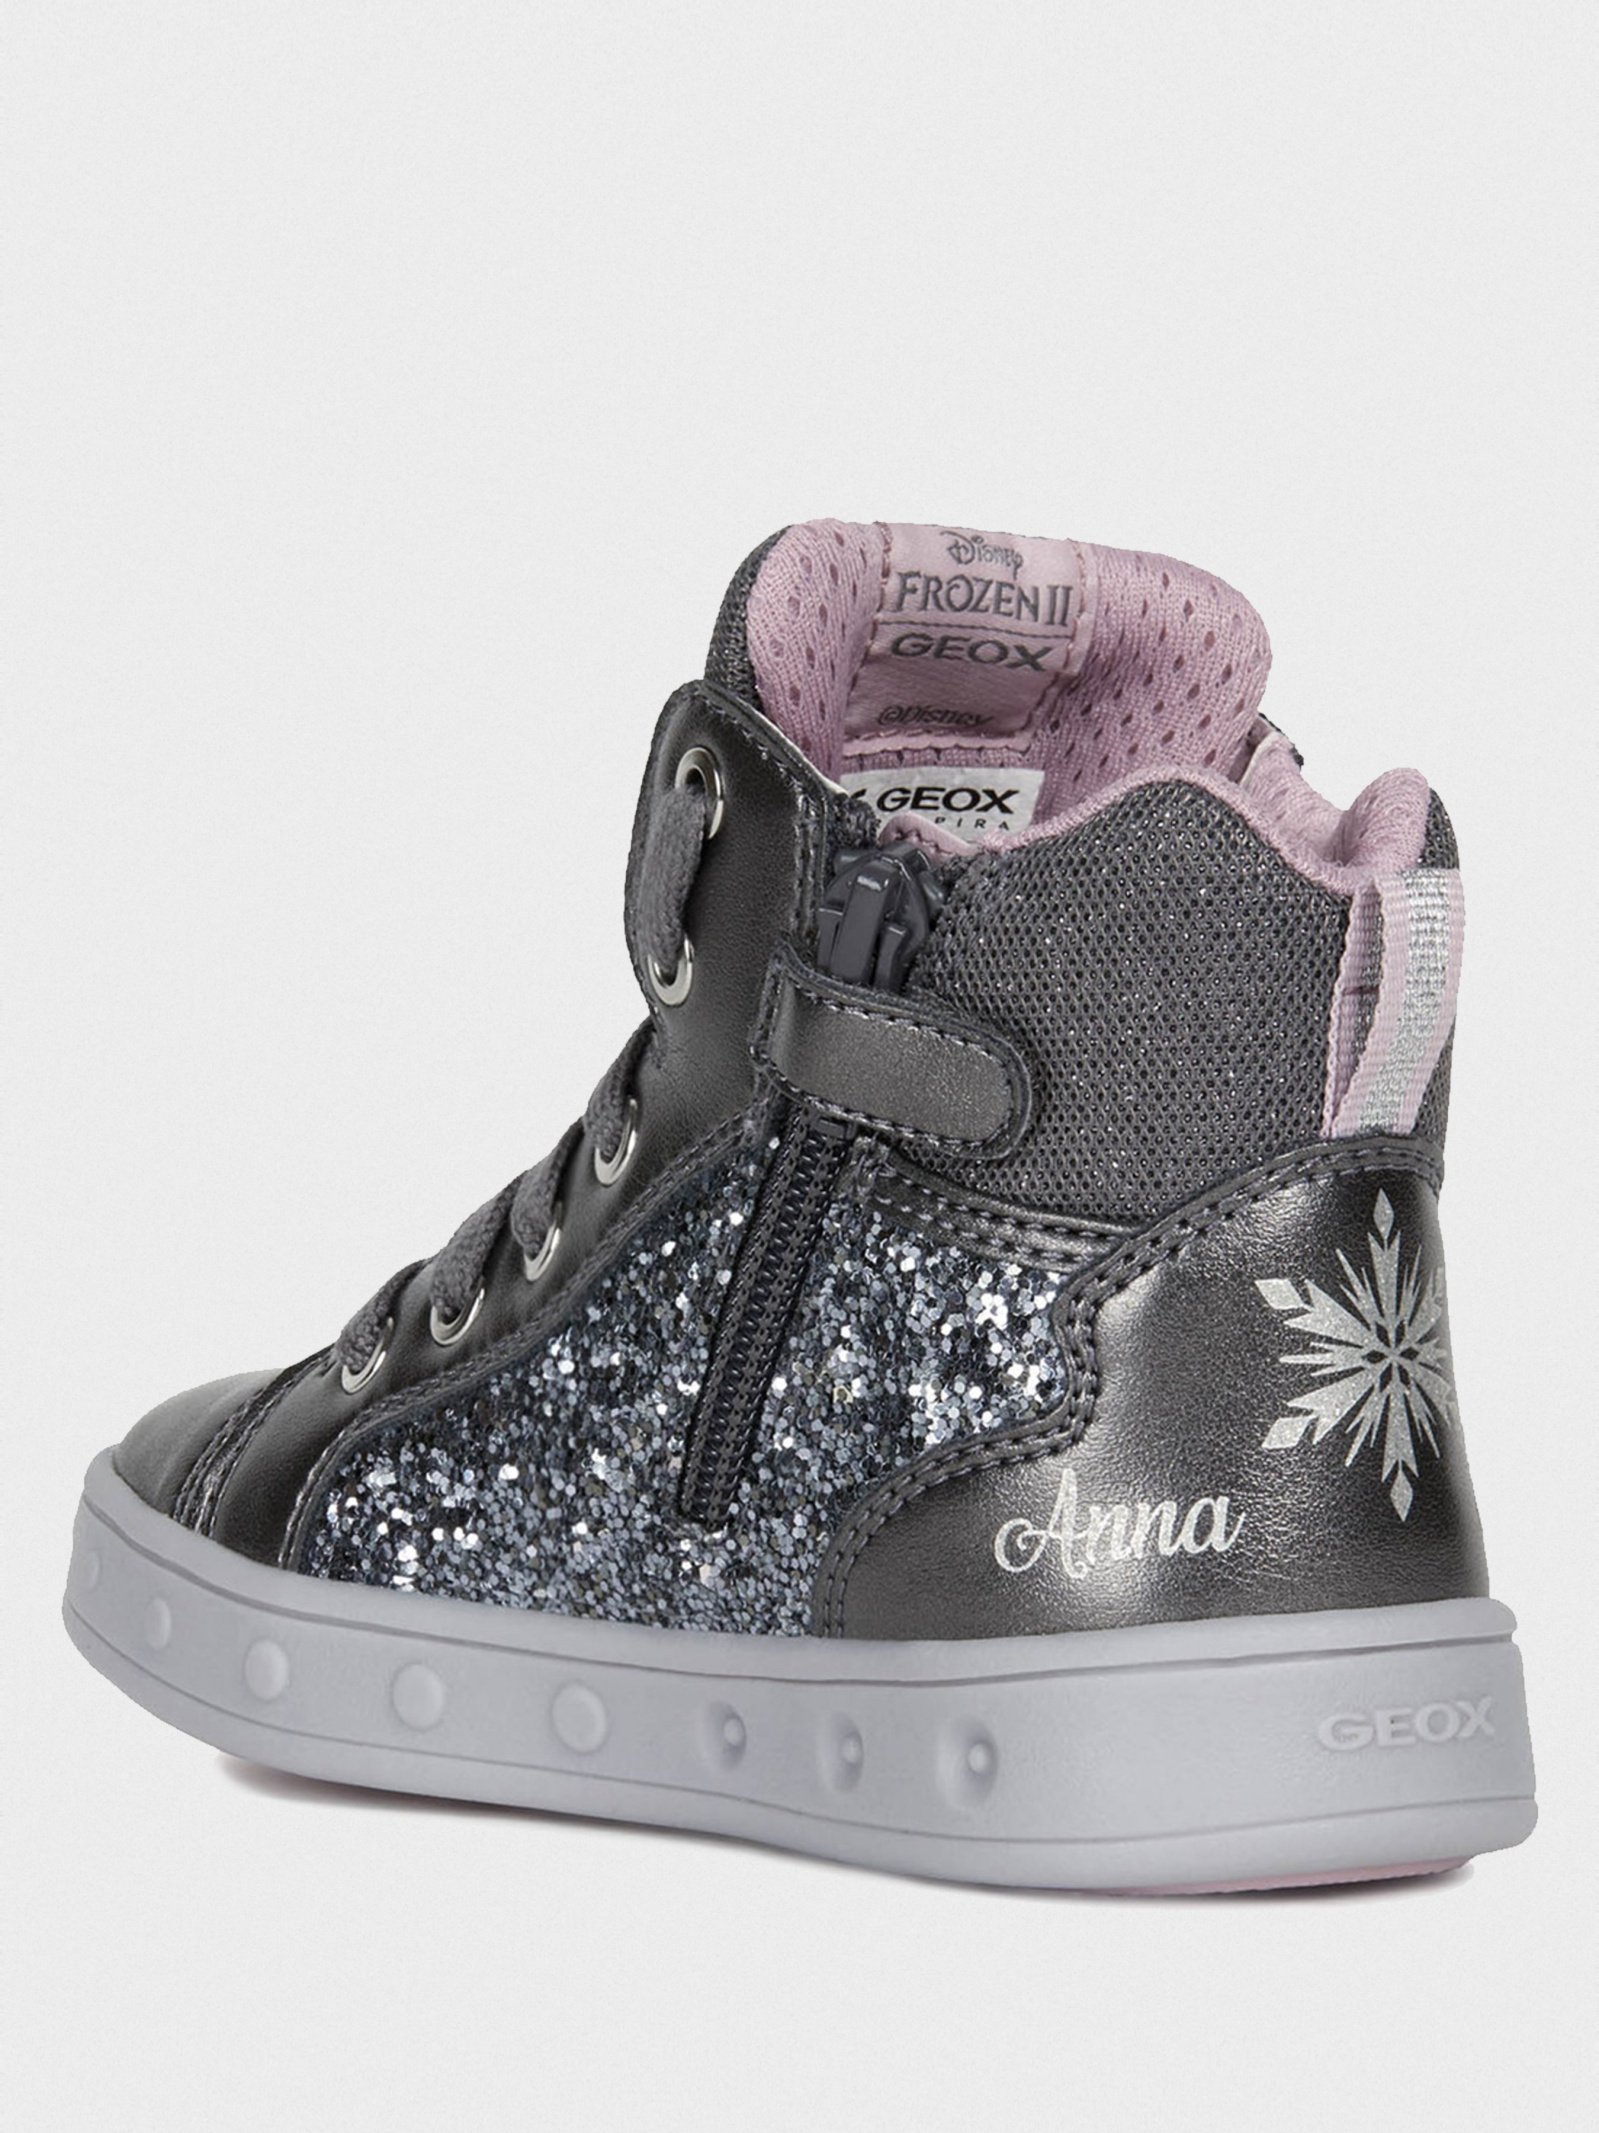 Ботинки Frozen Skylin для девочек - купить в Киеве, Украине в магазине Intertop: цена, фото, отзывы